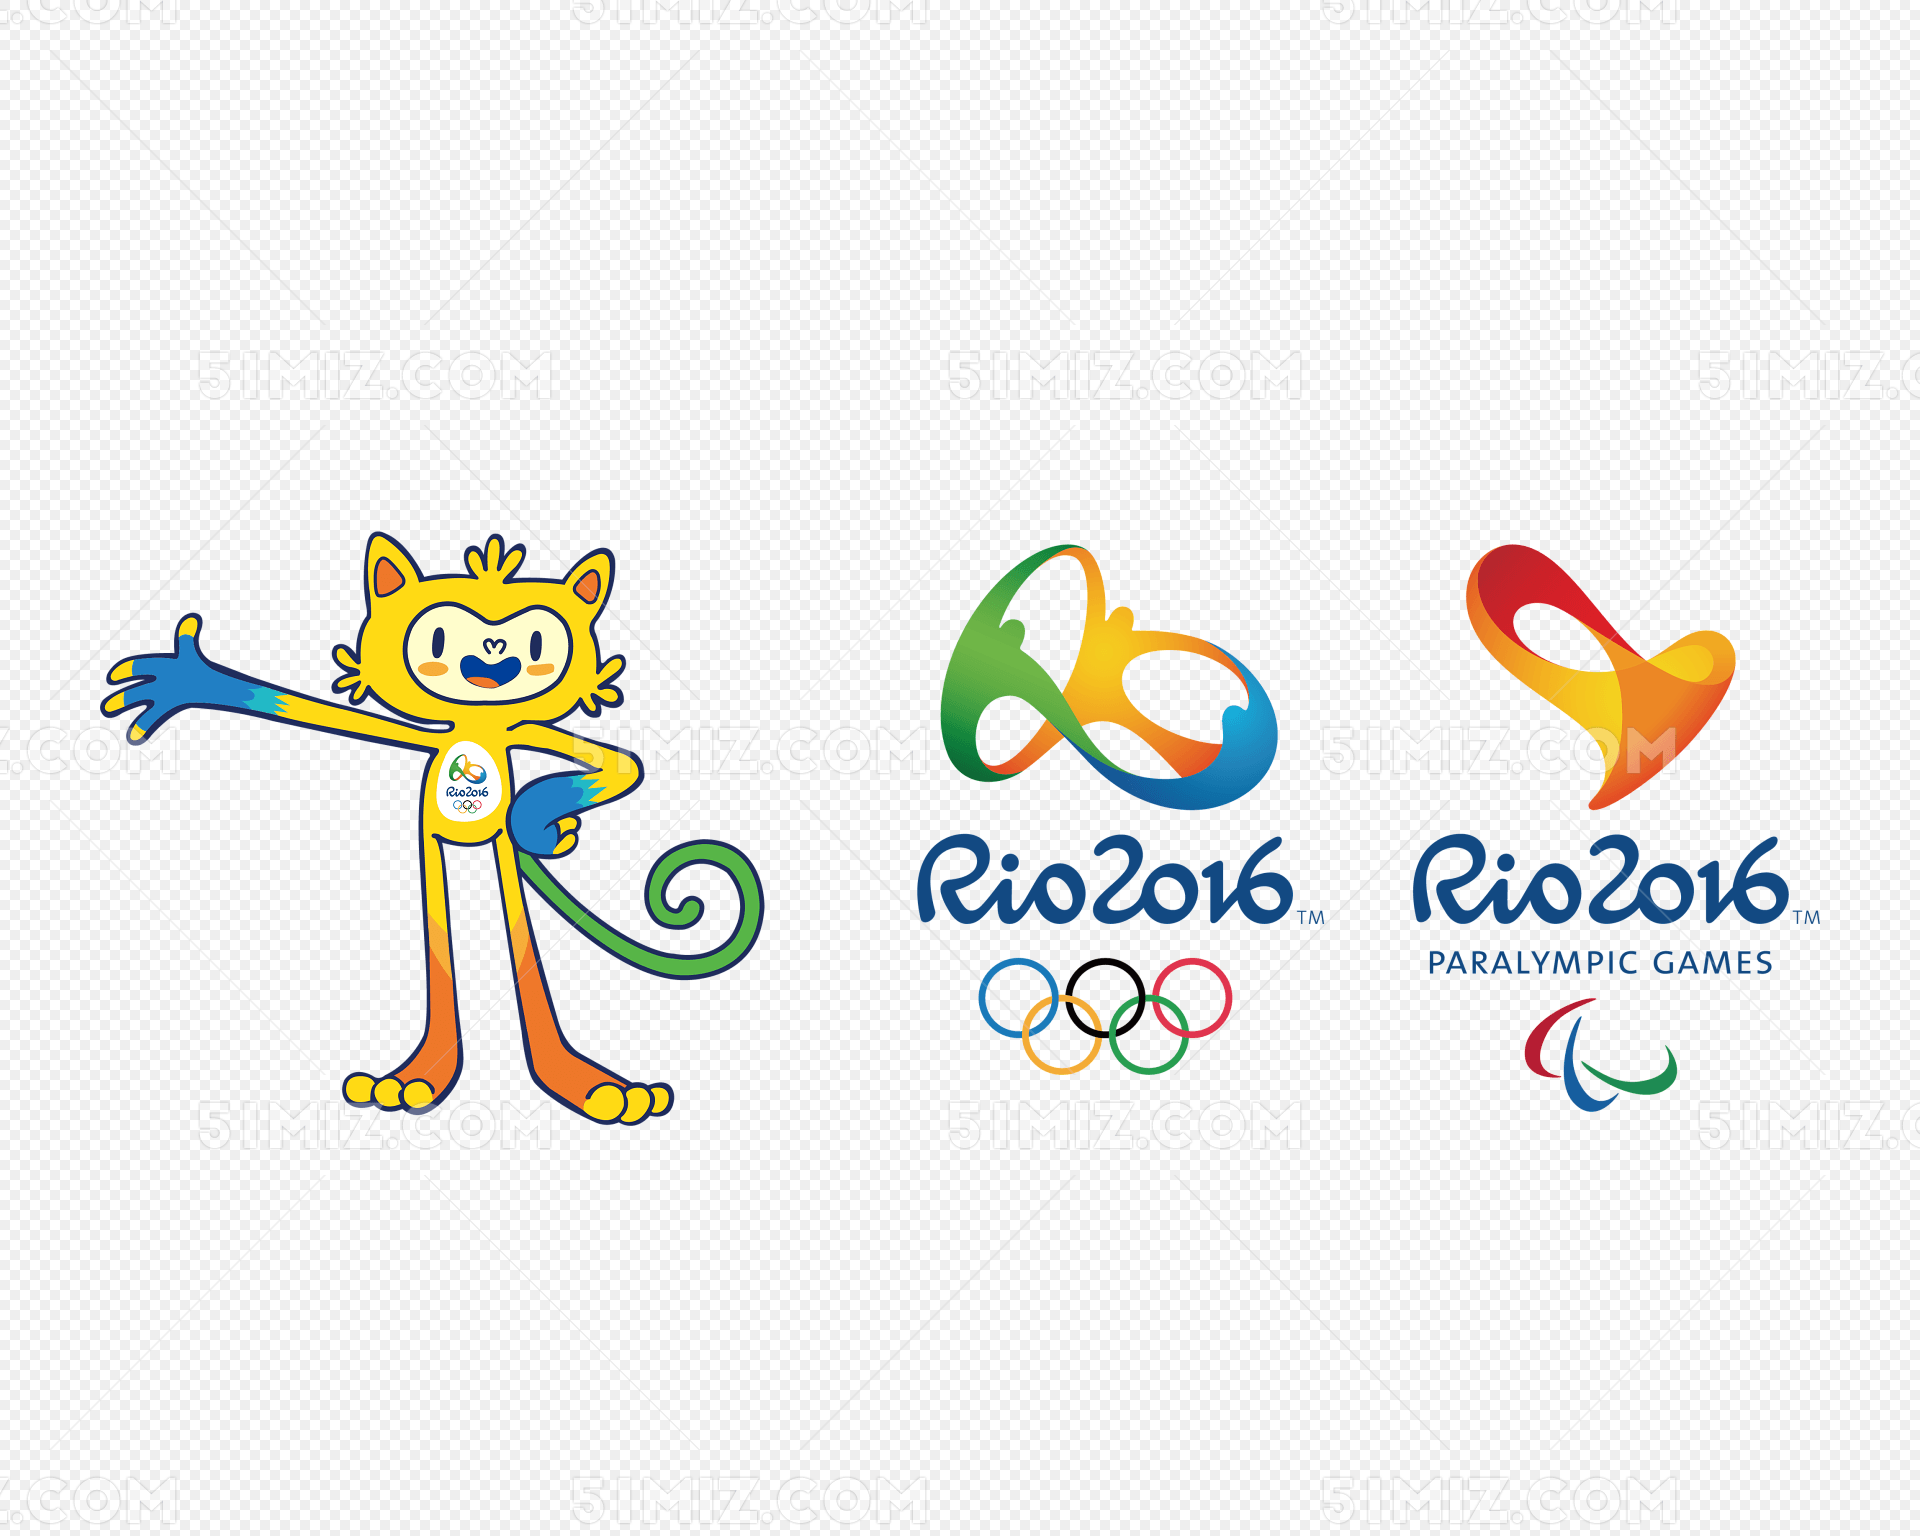 2016里约奥运会吉祥物logo